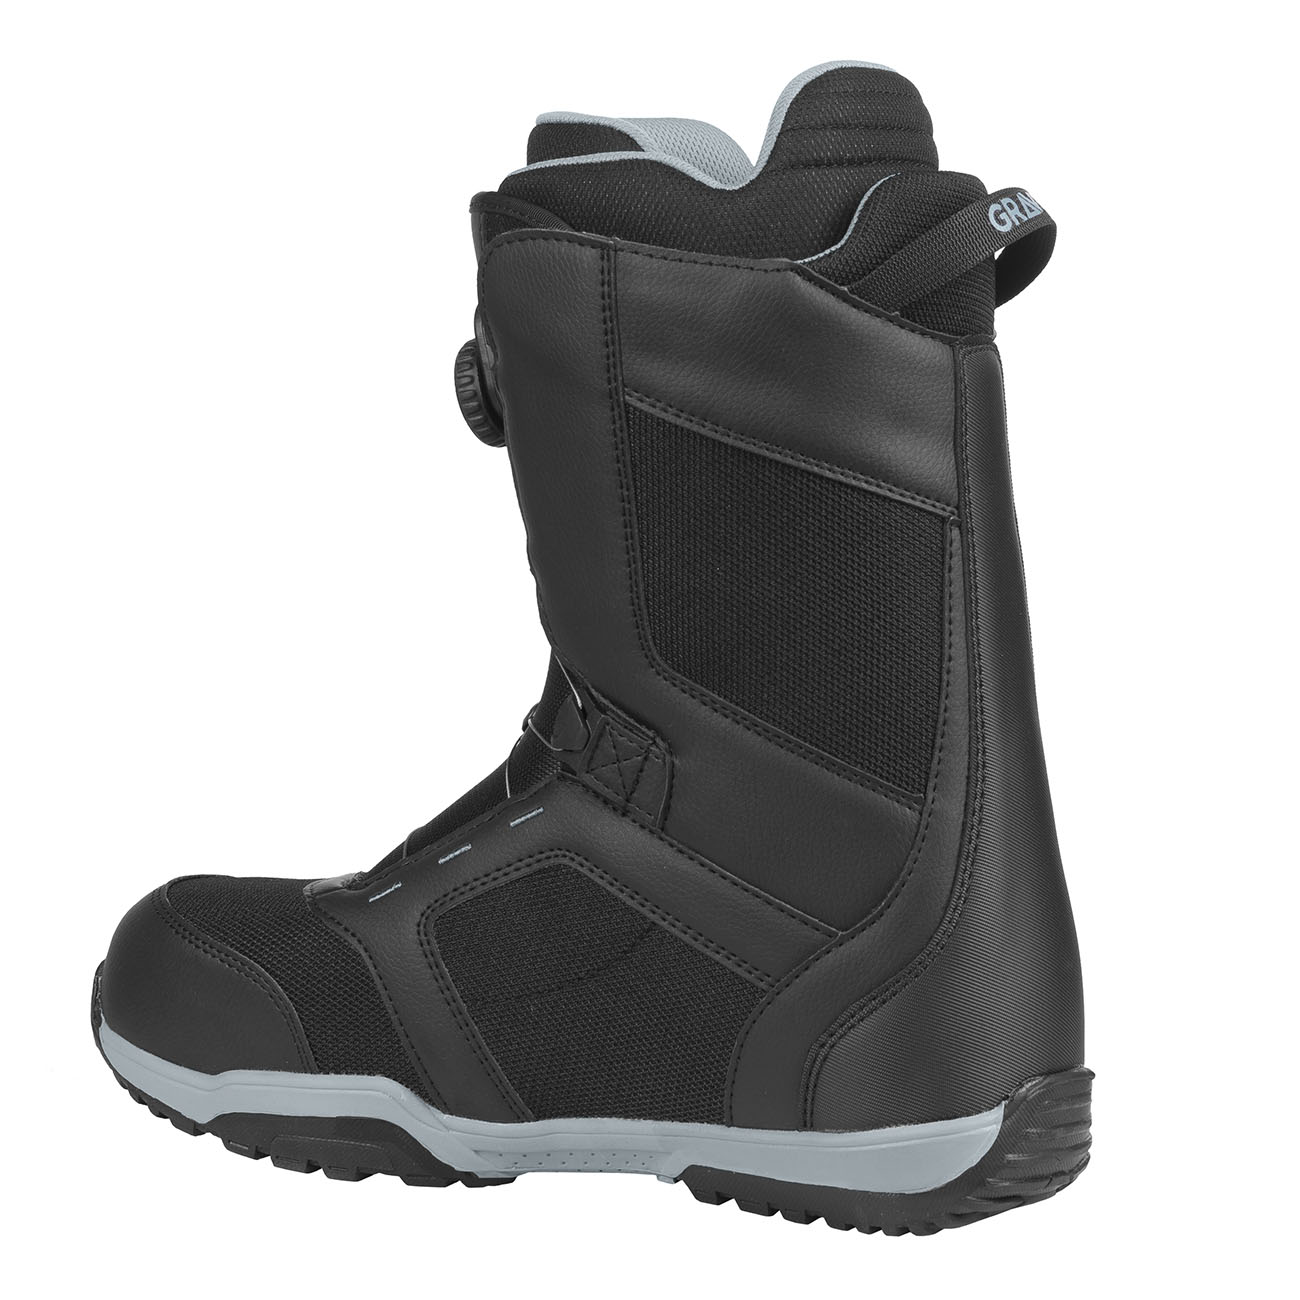 Snowboardové boty Gravity Recon Atop 20/21 černá/šedá